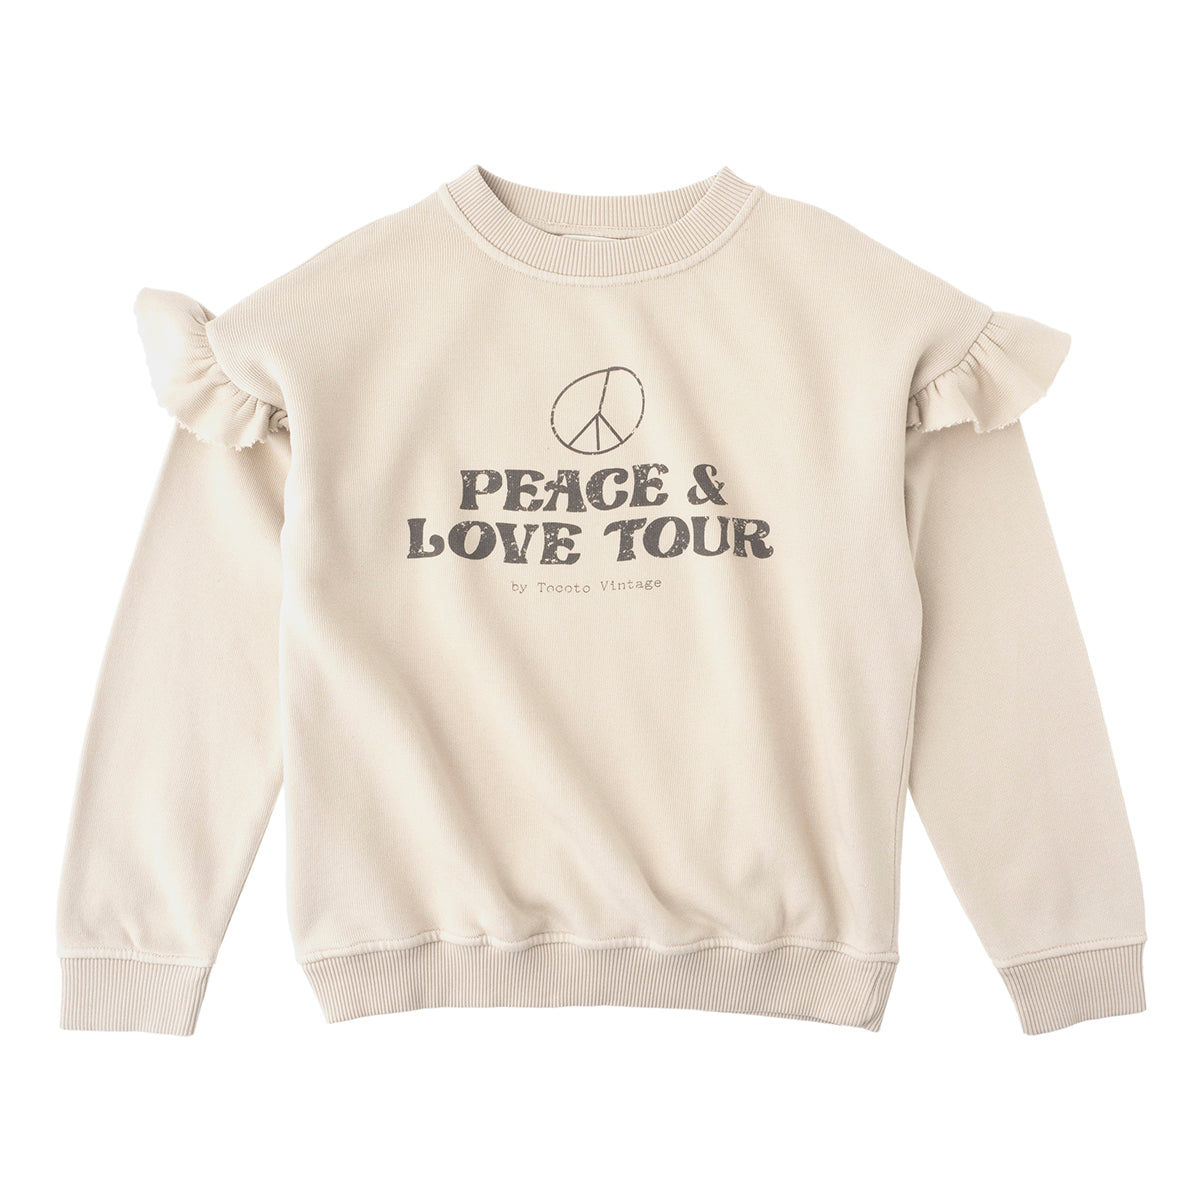 Tocotó Vintage Tocoto Vintage Peace & Love Tour Sweatshirt